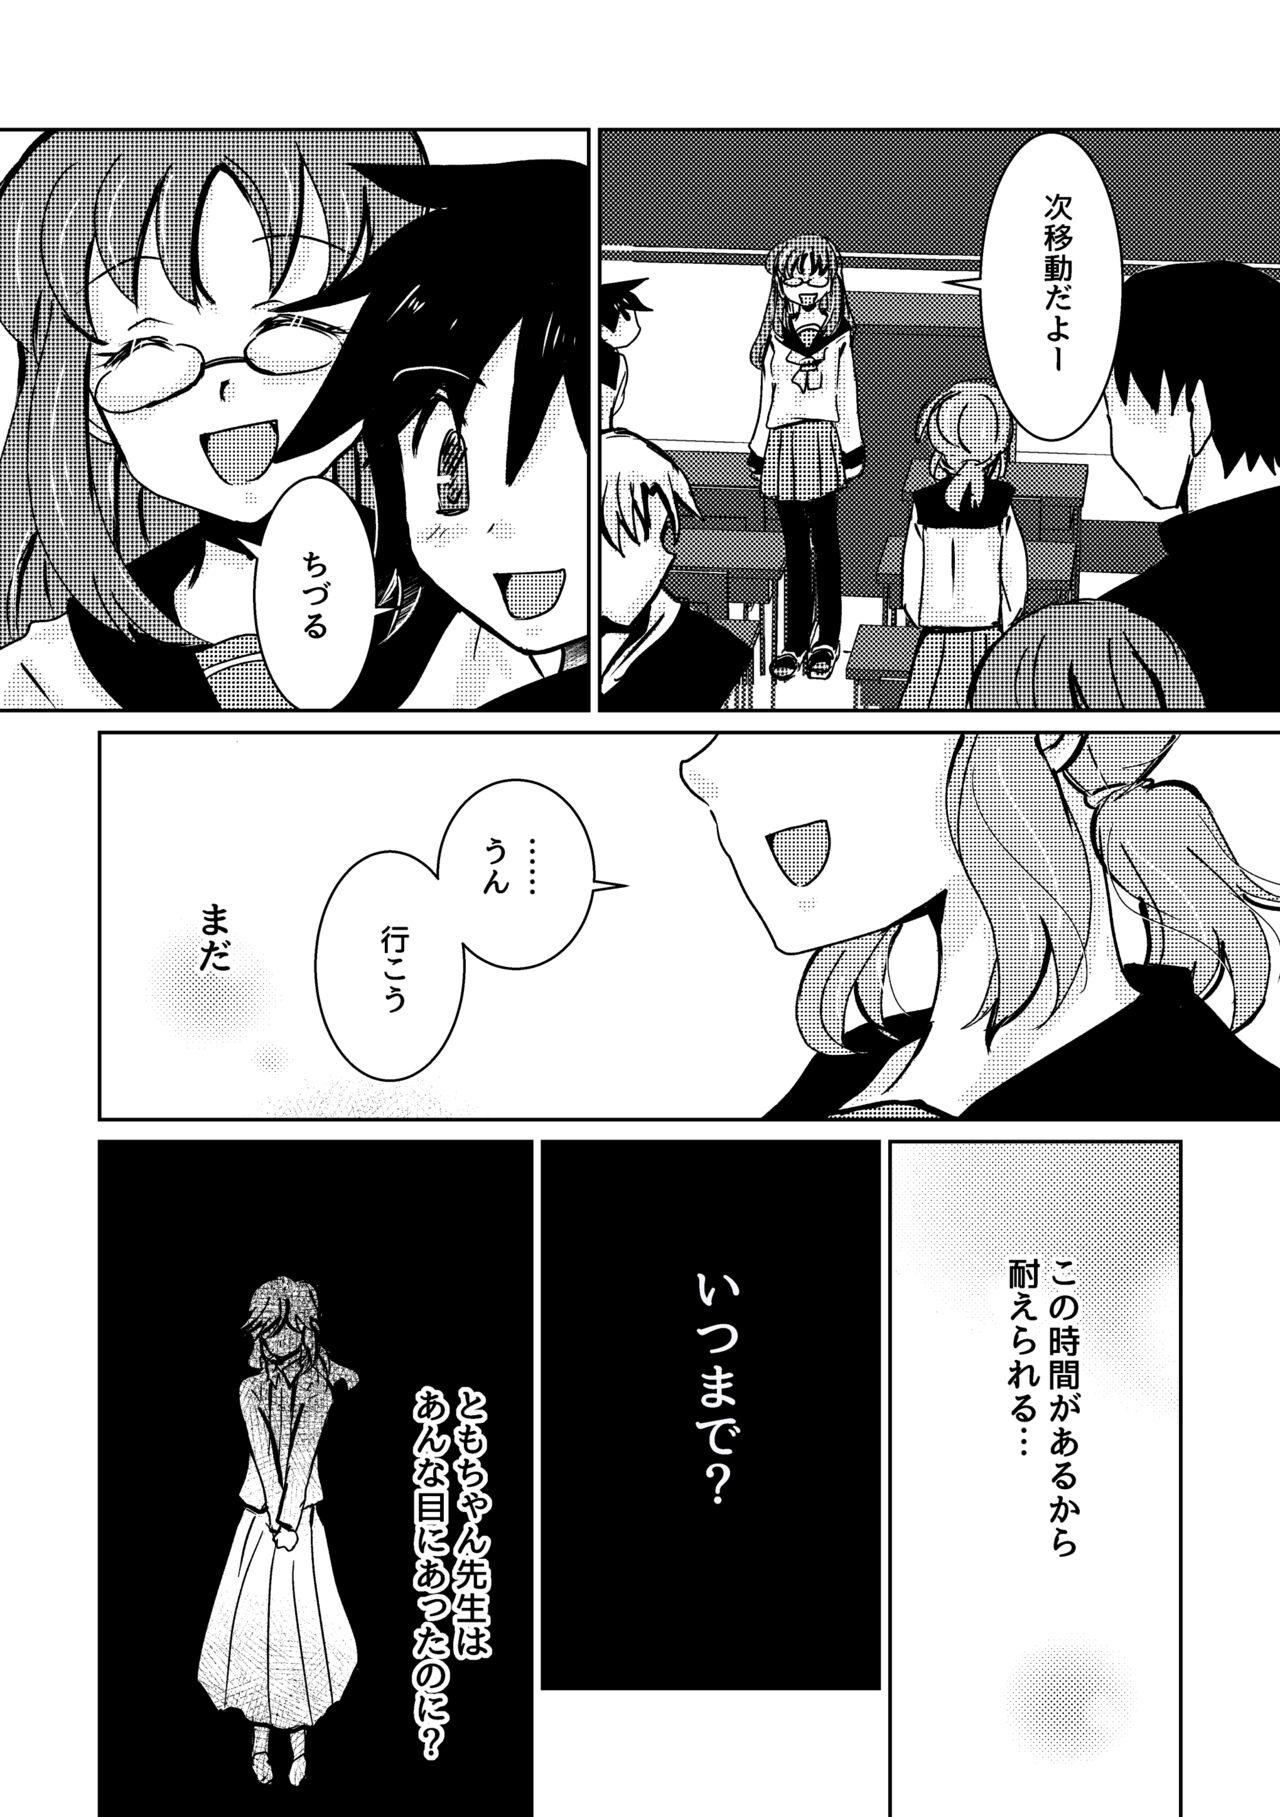 Naija Kareya Yoru no Hanaka Episode 3 Stroking - Page 8